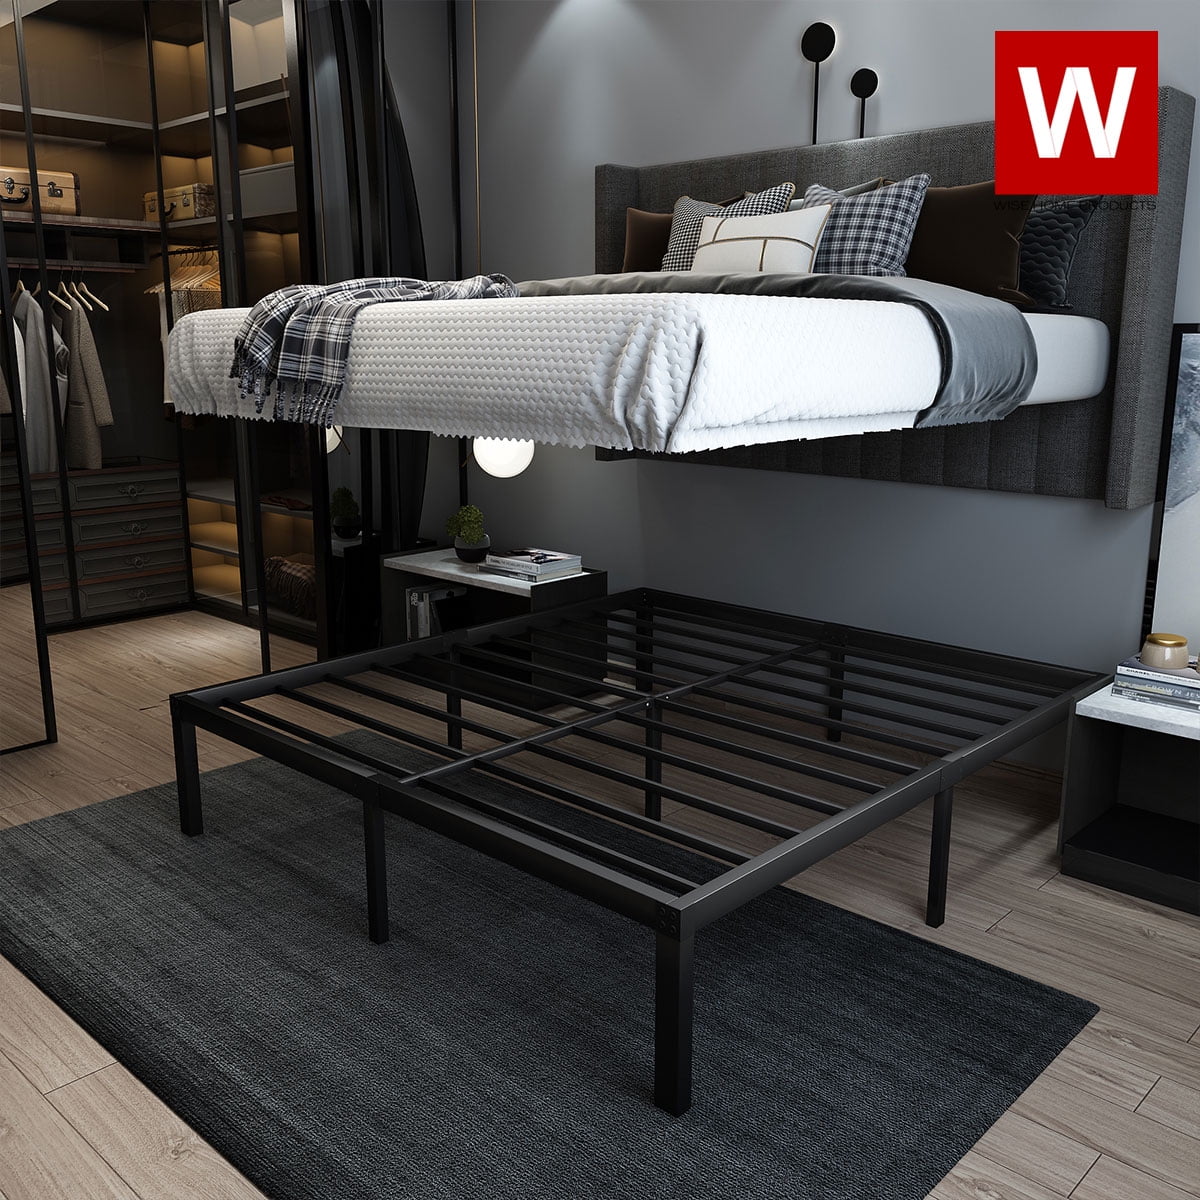 King Size Metal Platform Bed Frame With, King Platform Bed With Storage Underneath